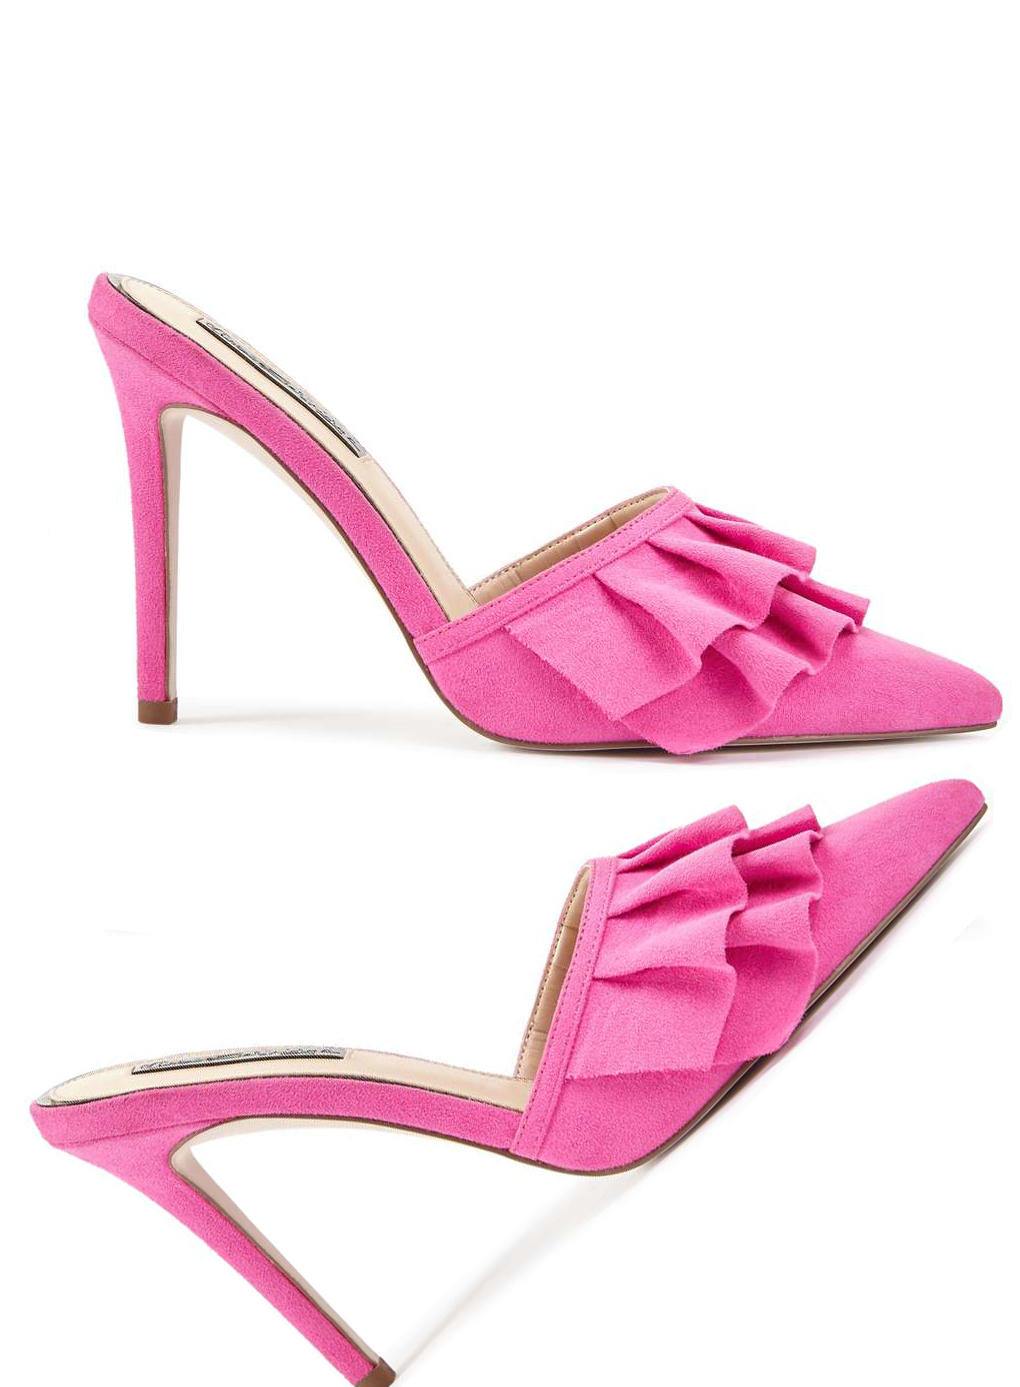 Miss Selfridge heels, $73